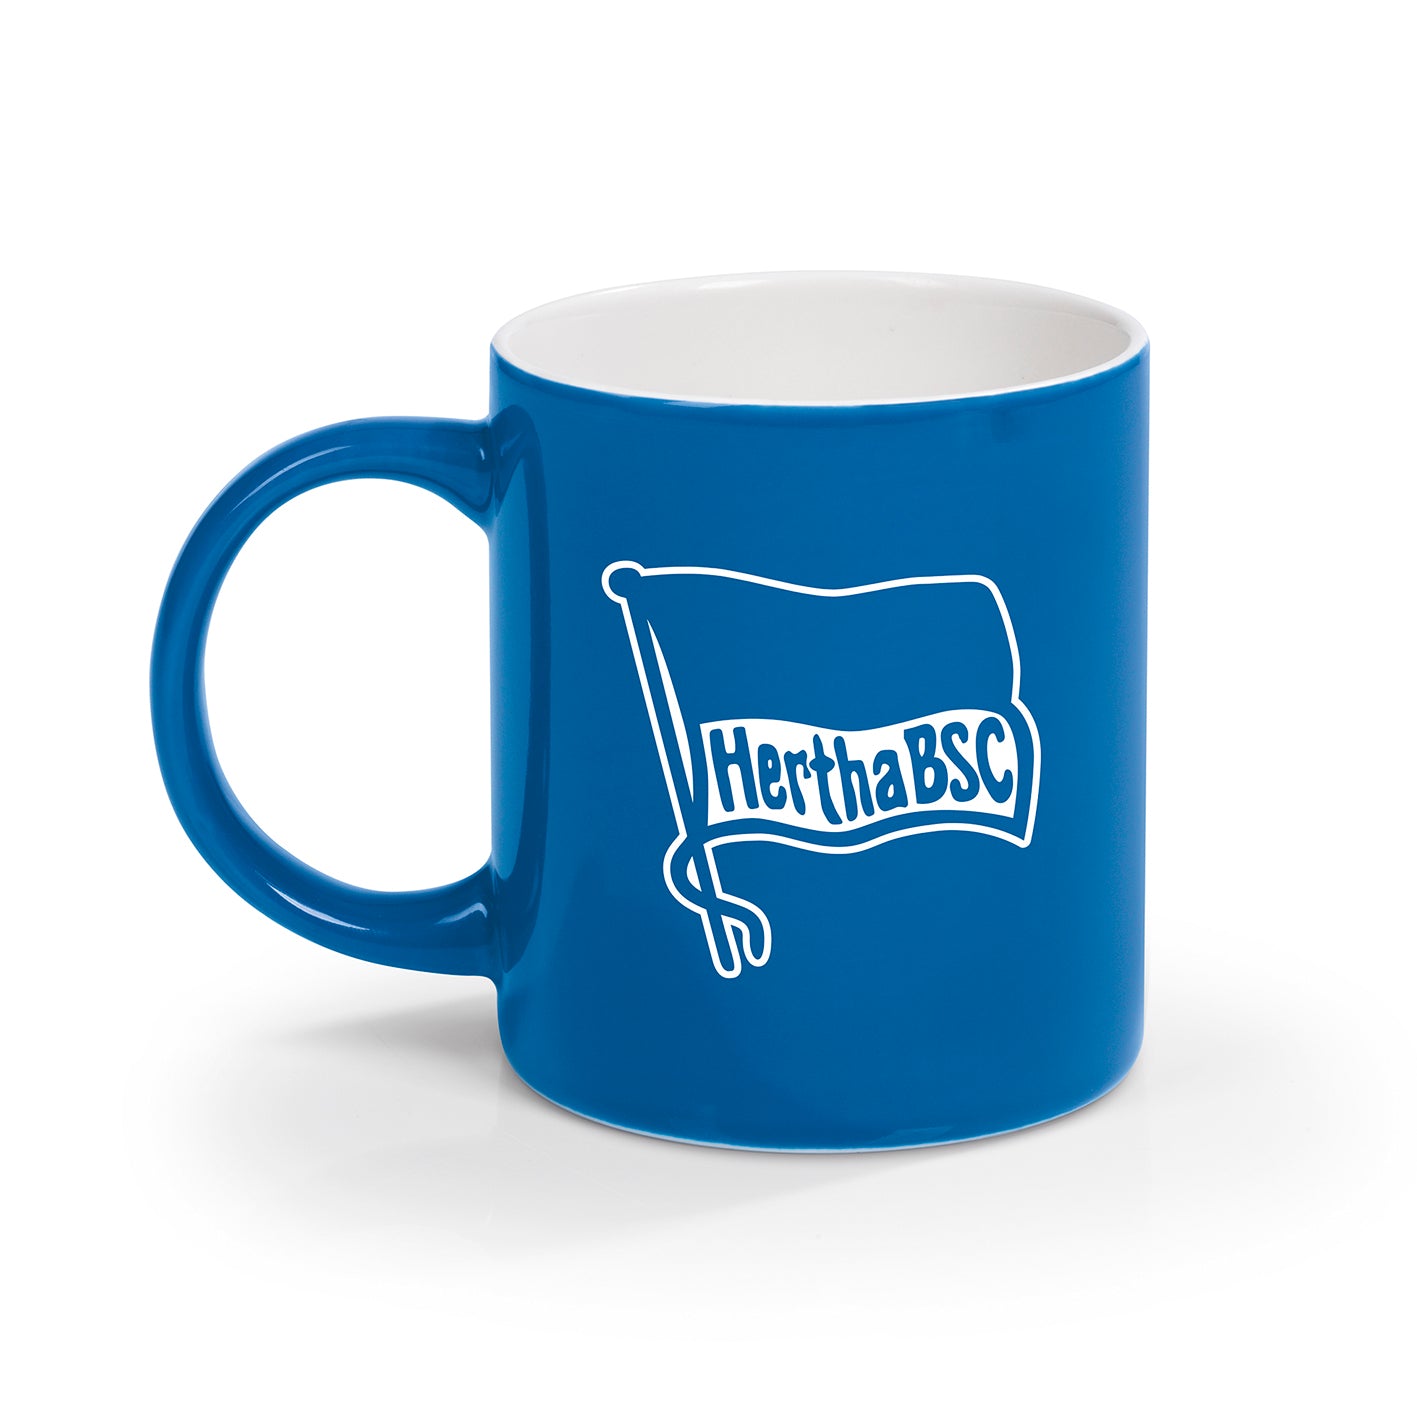 Kaffeebecher - 350 ml - blau/weiß mit Logo